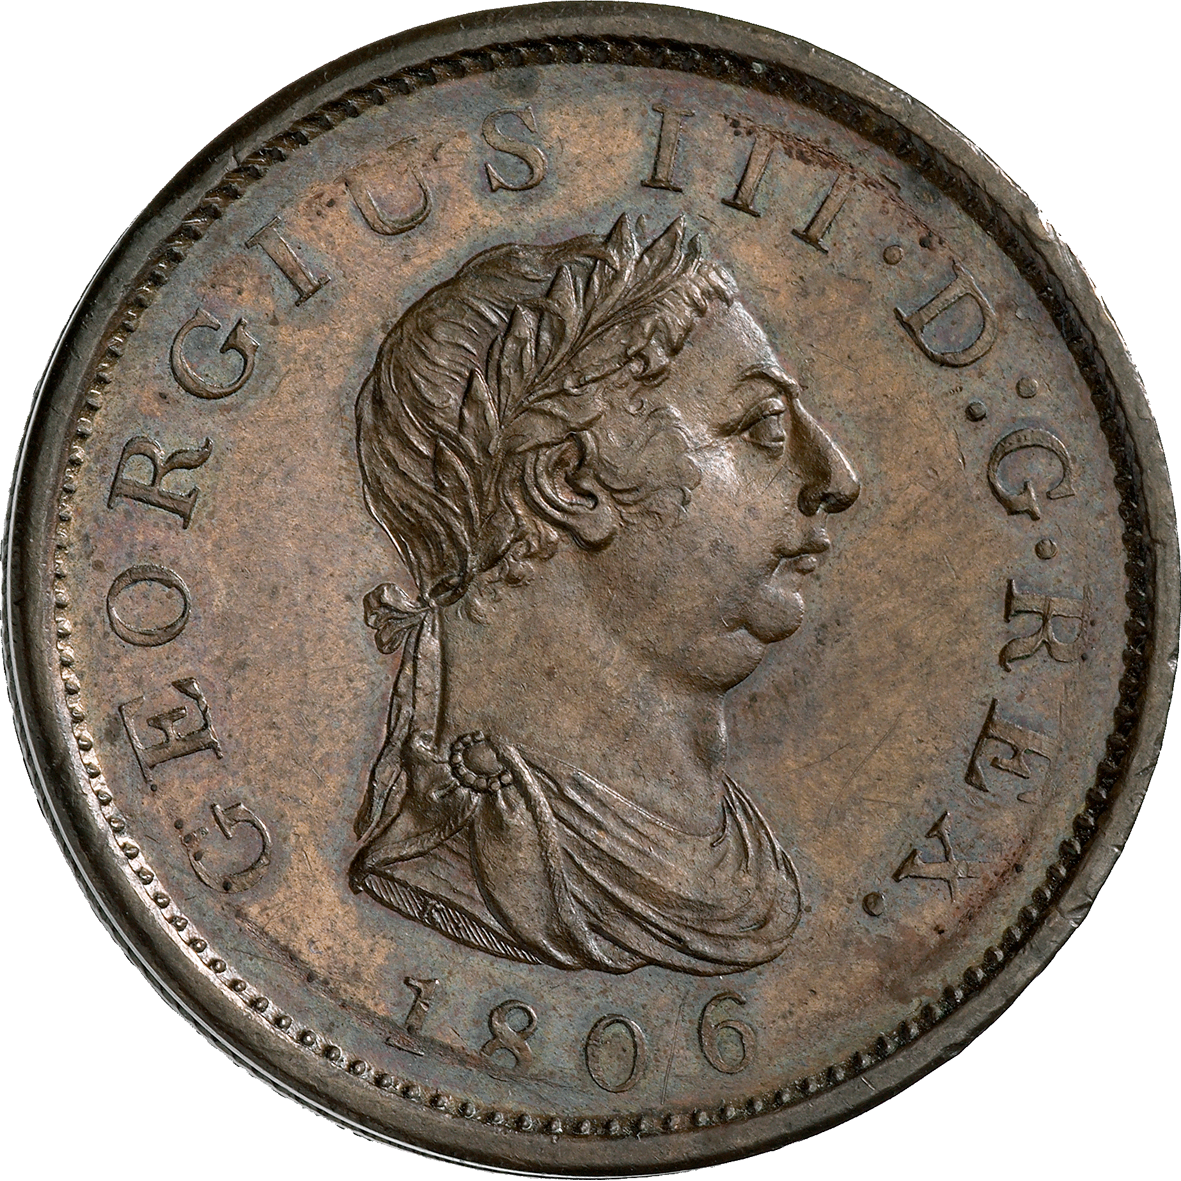 Vereinigtes Königreich Grossbritannien, Georg III., Penny 1806 (obverse)